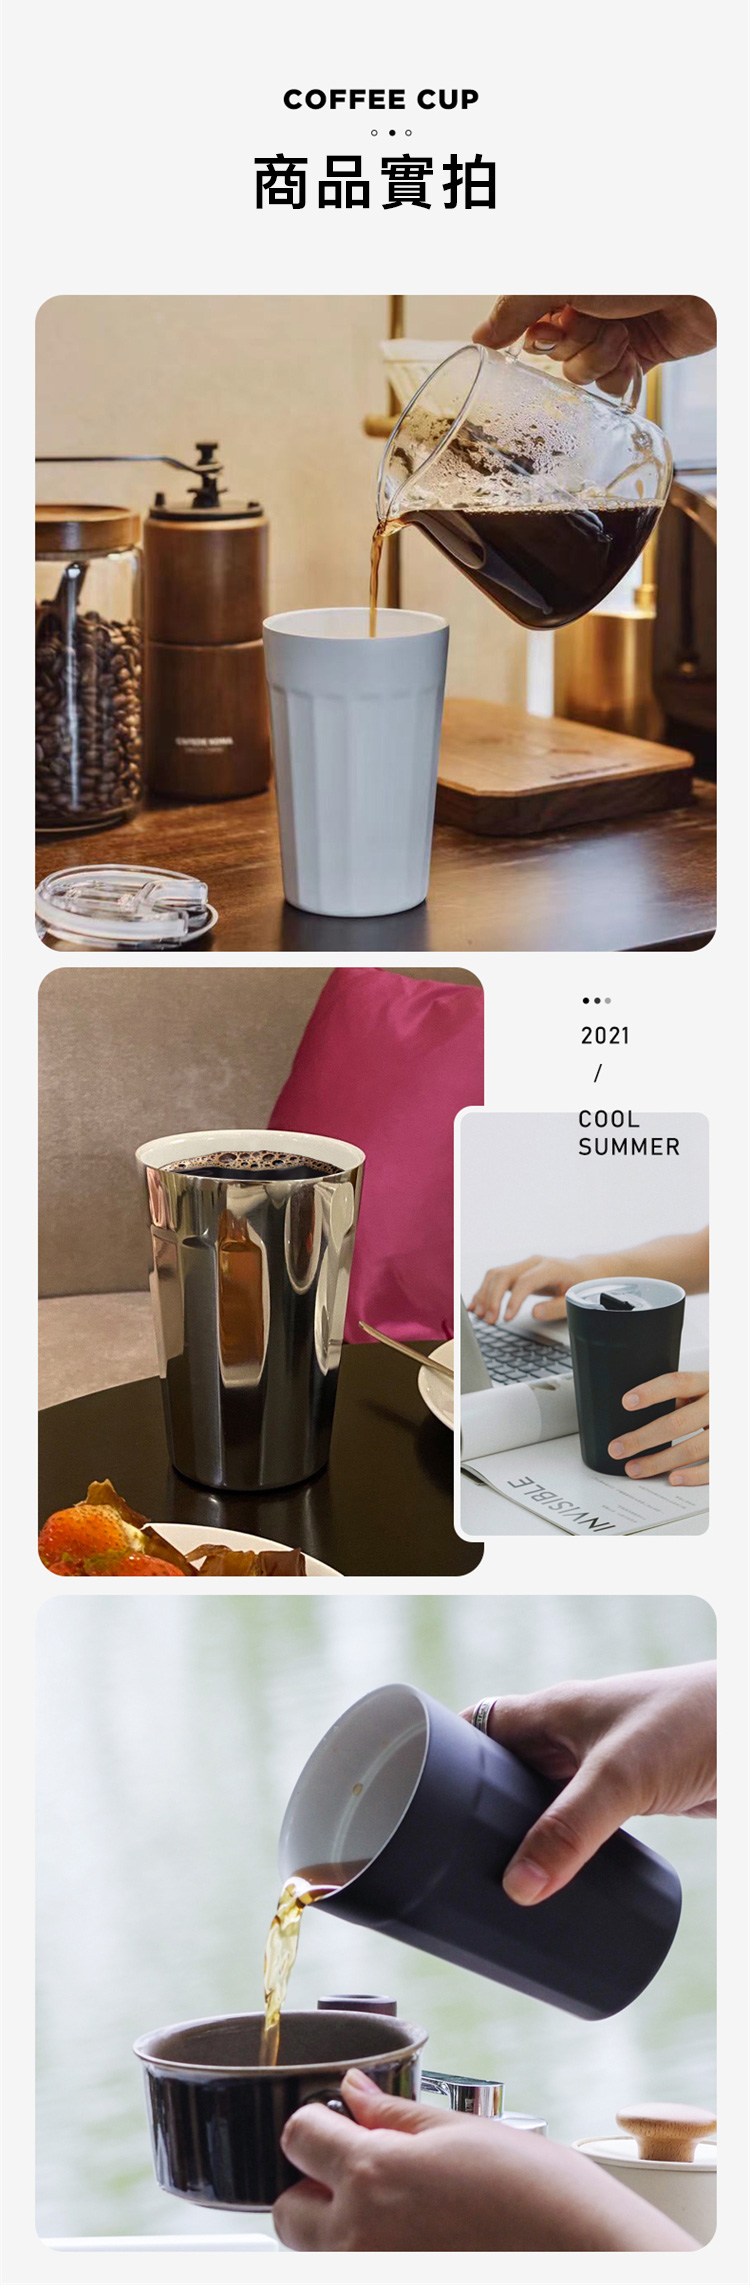 丹麥設計 PO:Selected 陶瓷內膽 不鏽鋼棱角保溫杯 300ml (黑色)